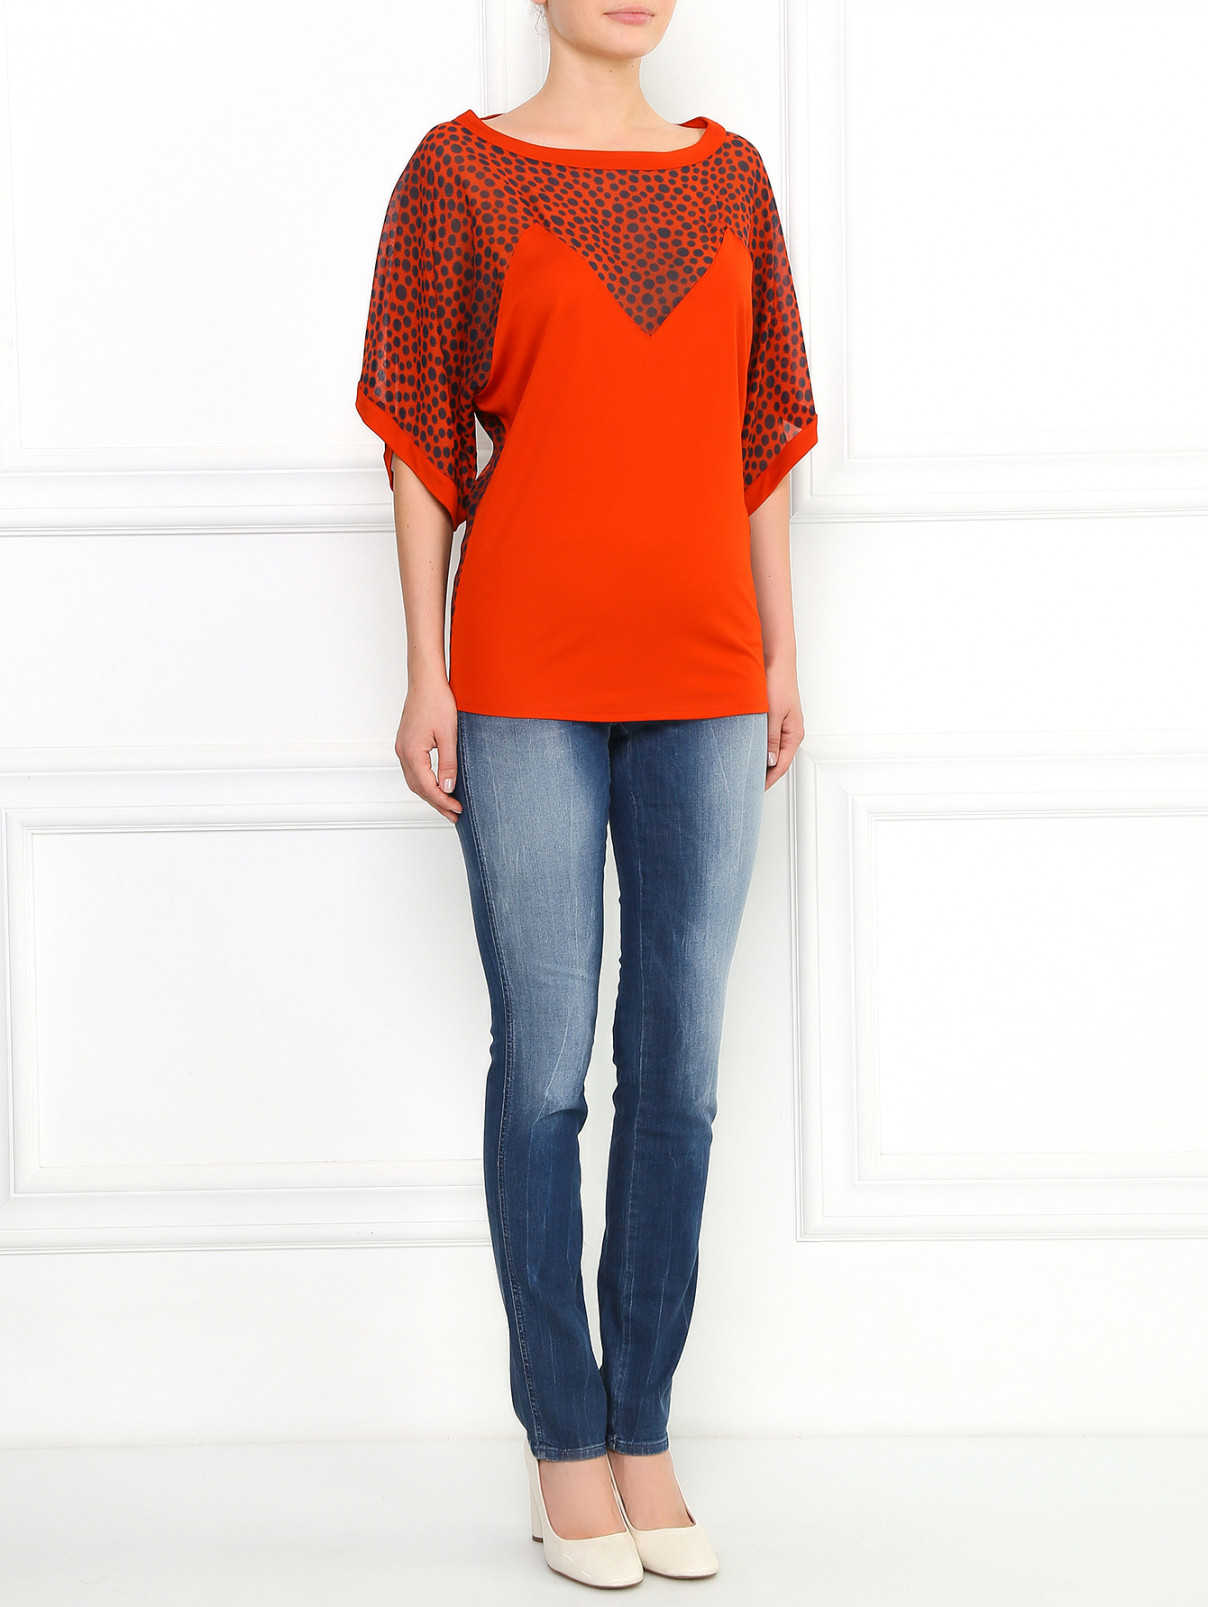 Блуза из шелка с узором Jean Paul Gaultier  –  Модель Общий вид  – Цвет:  Оранжевый